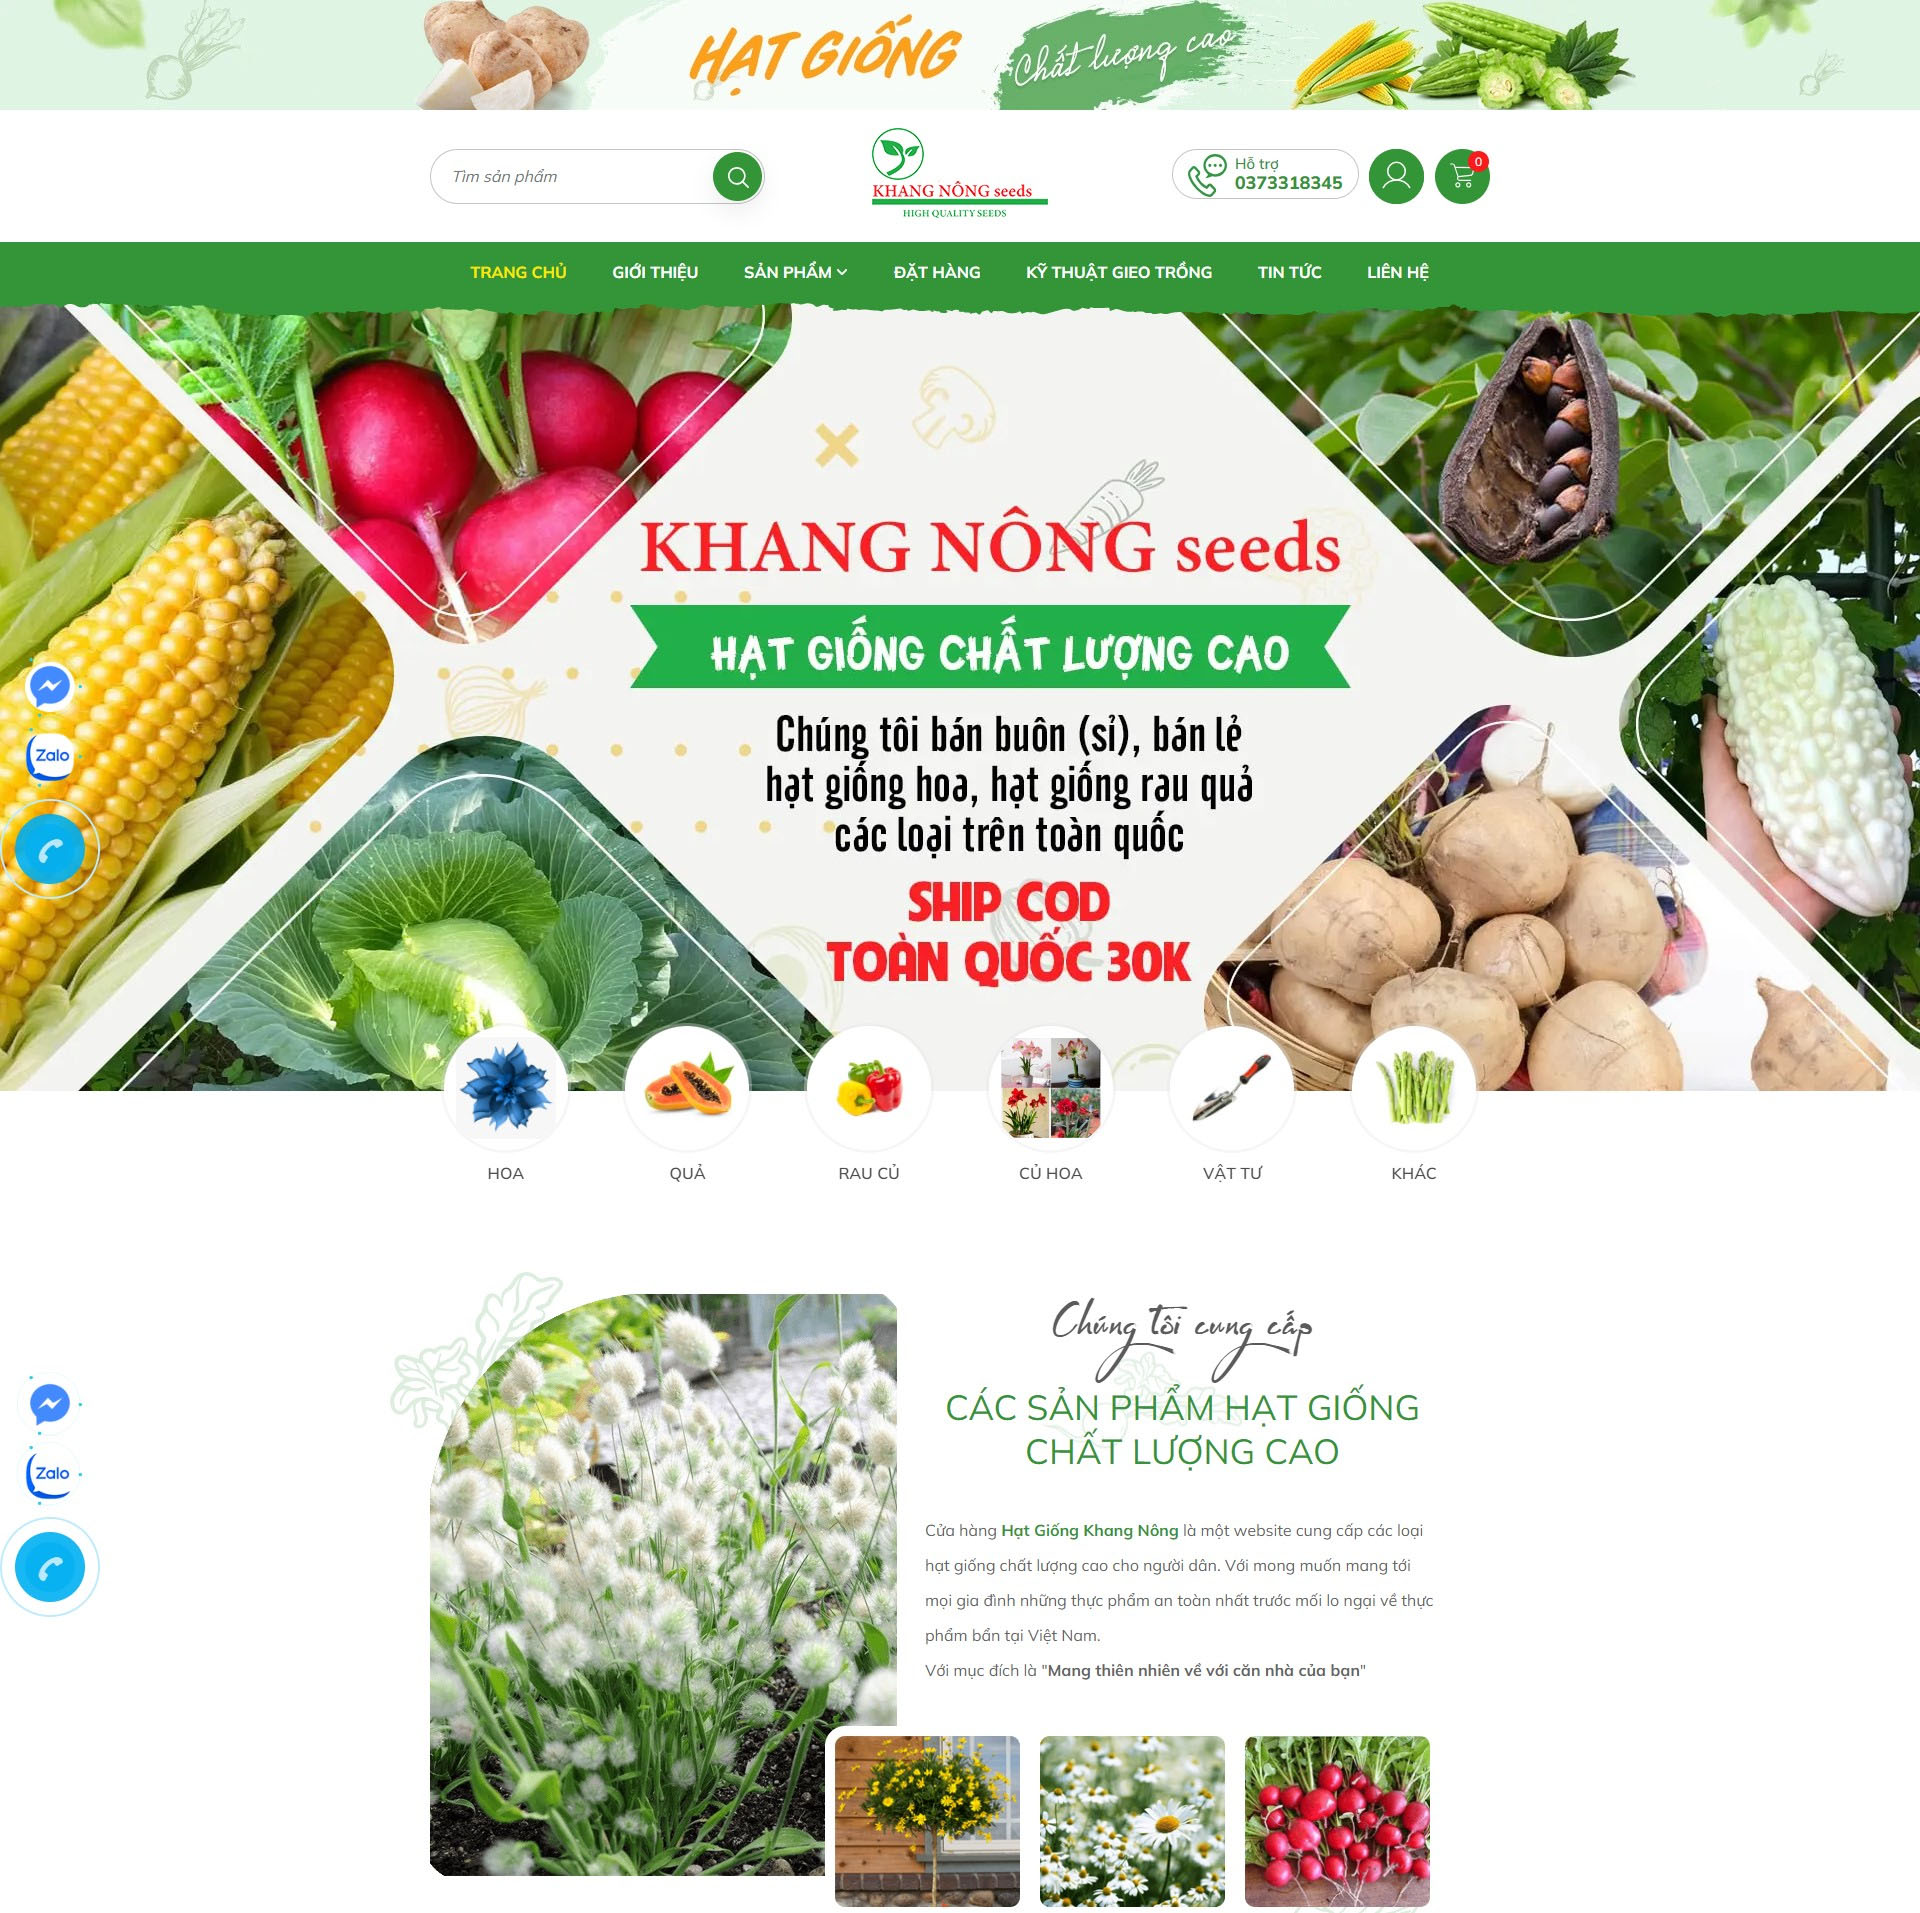 Lợi ích của việc thiết kế website bán hạt giống